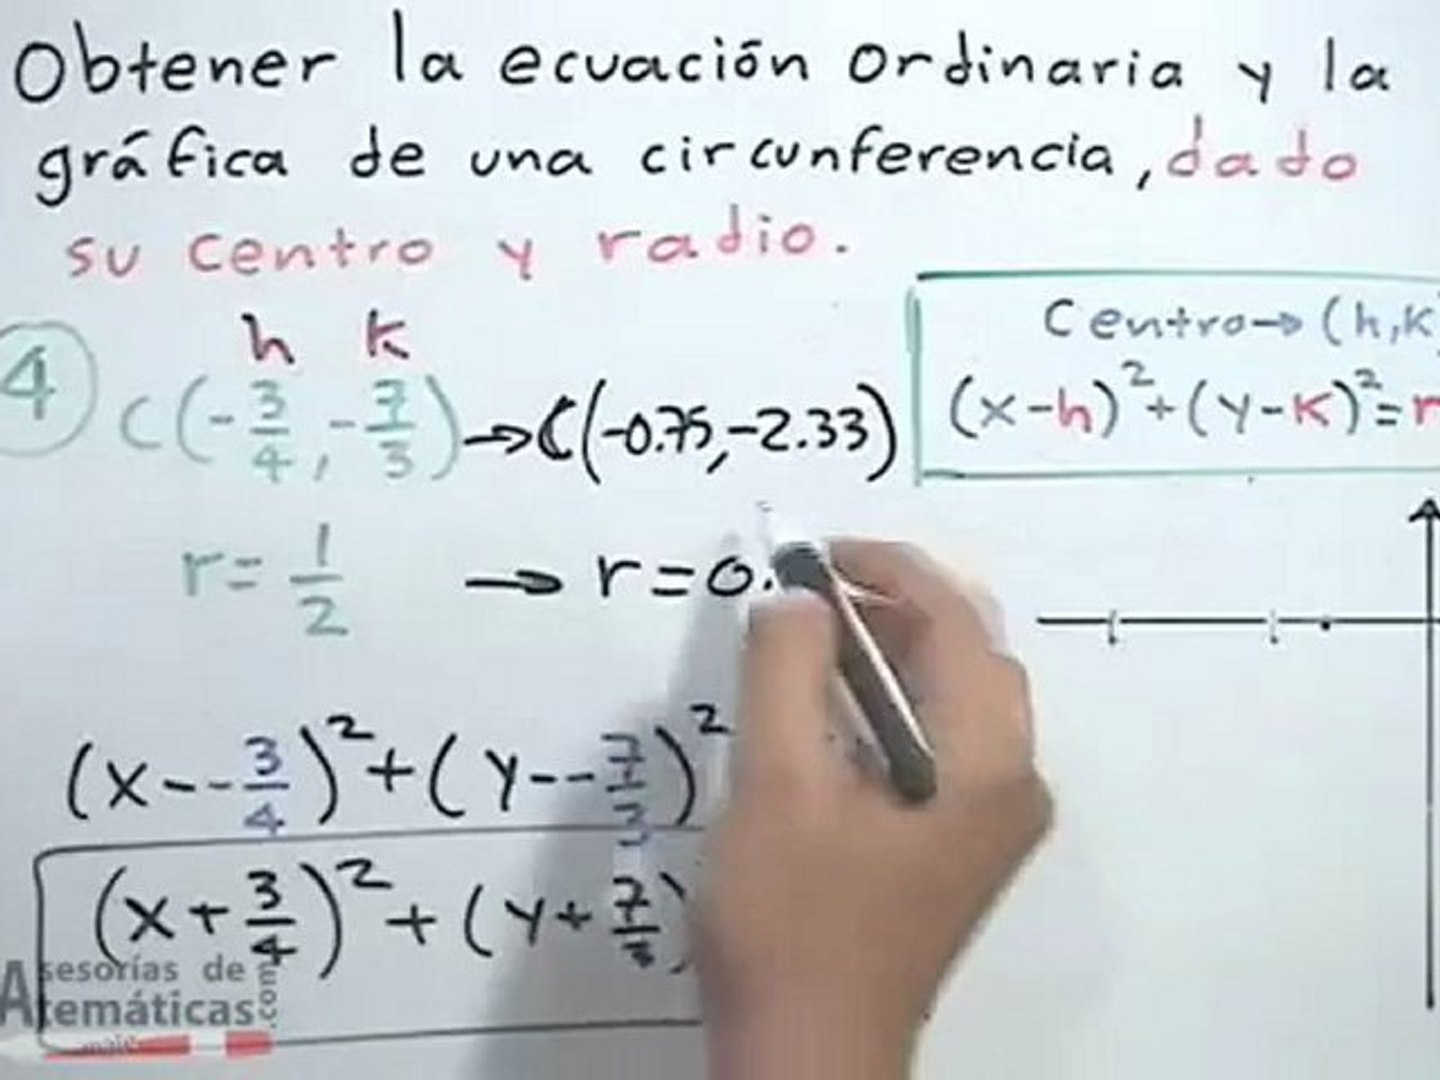 Obtener La Ecuacion Ordinaria De Una Circunferencia Dado Su Centro